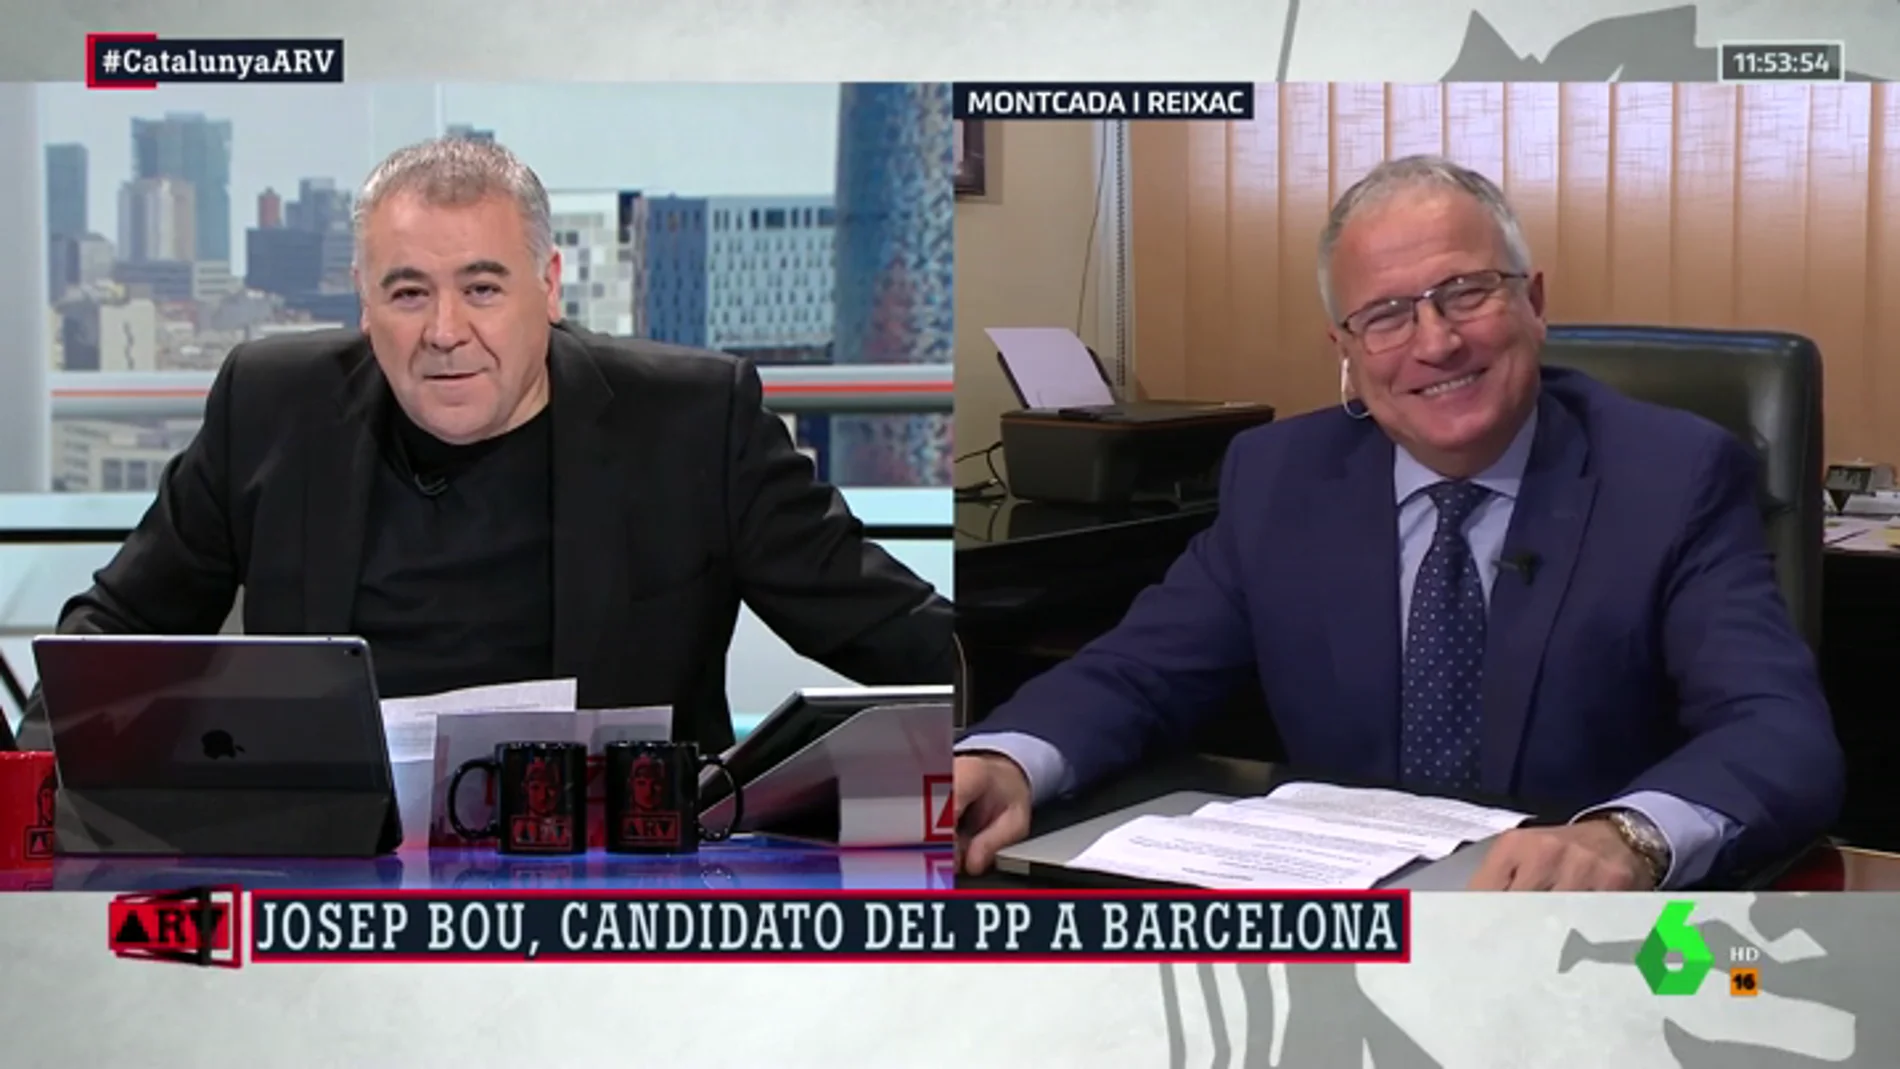 Josep Bou, candidato del PP al Ayuntamiento de Barcelona: "Voy a montar un equipo de independientes. Buscaré gente competente y luego preguntaré de qué partido son"